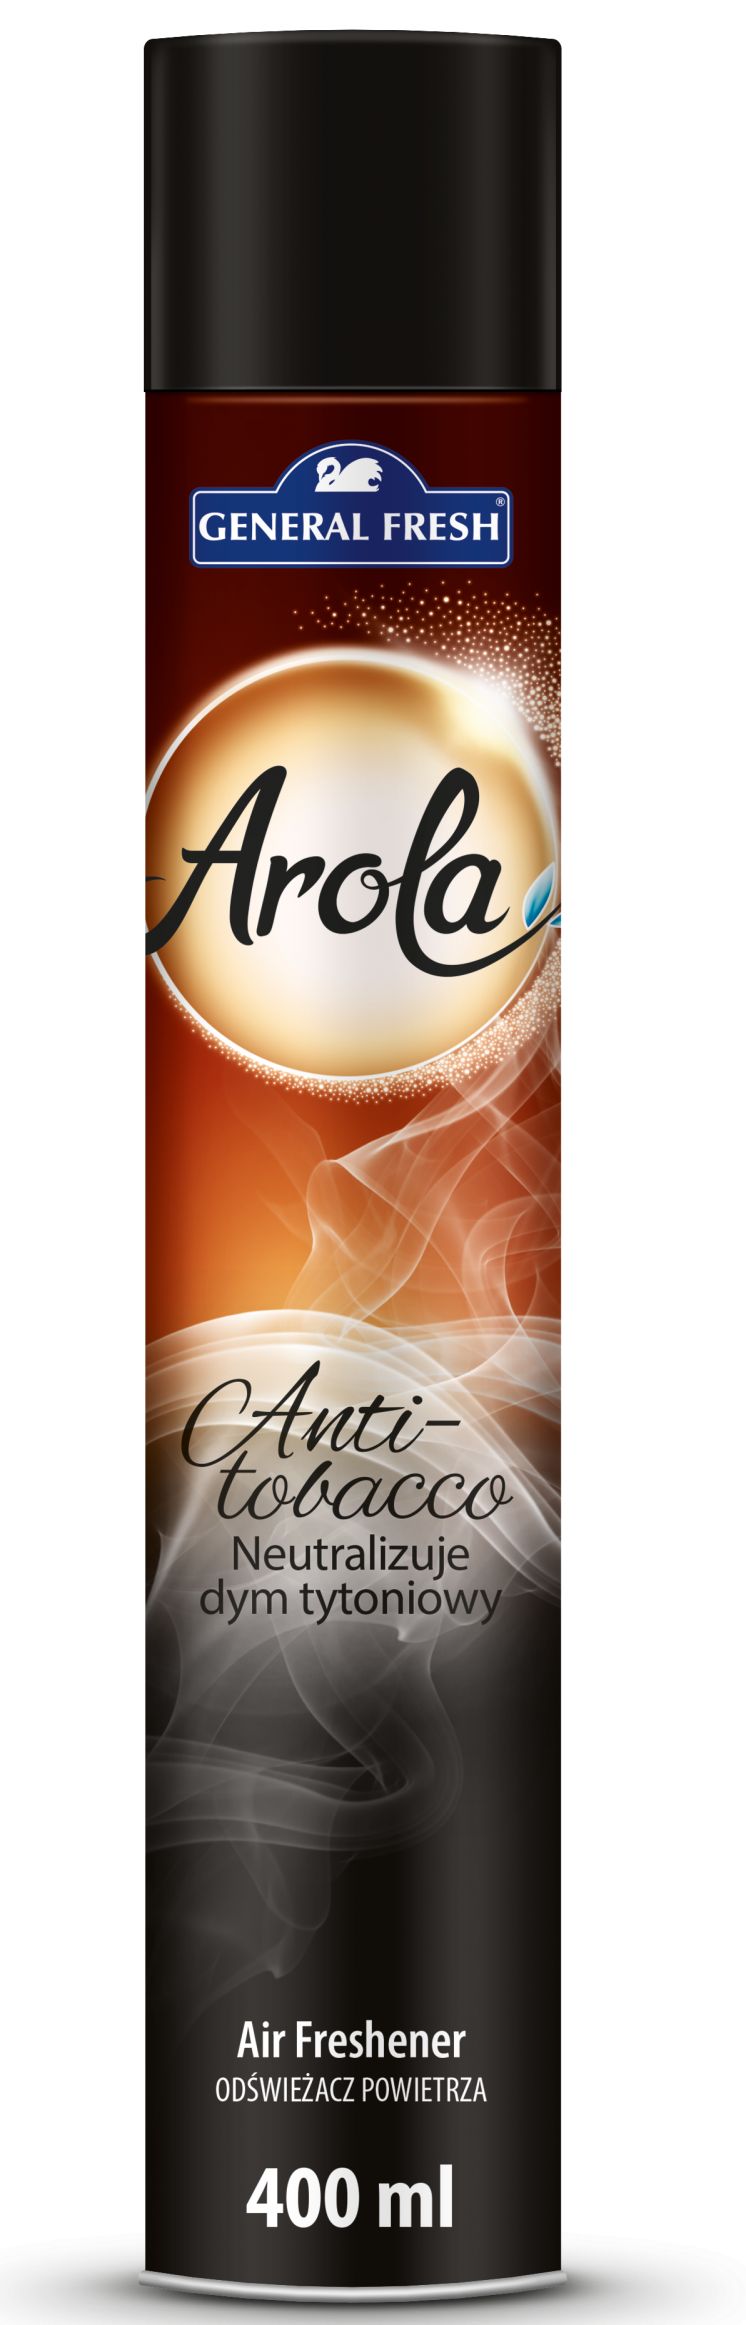 Odświeżacz powietrza AROLA Spray 400ml anti-tobacco